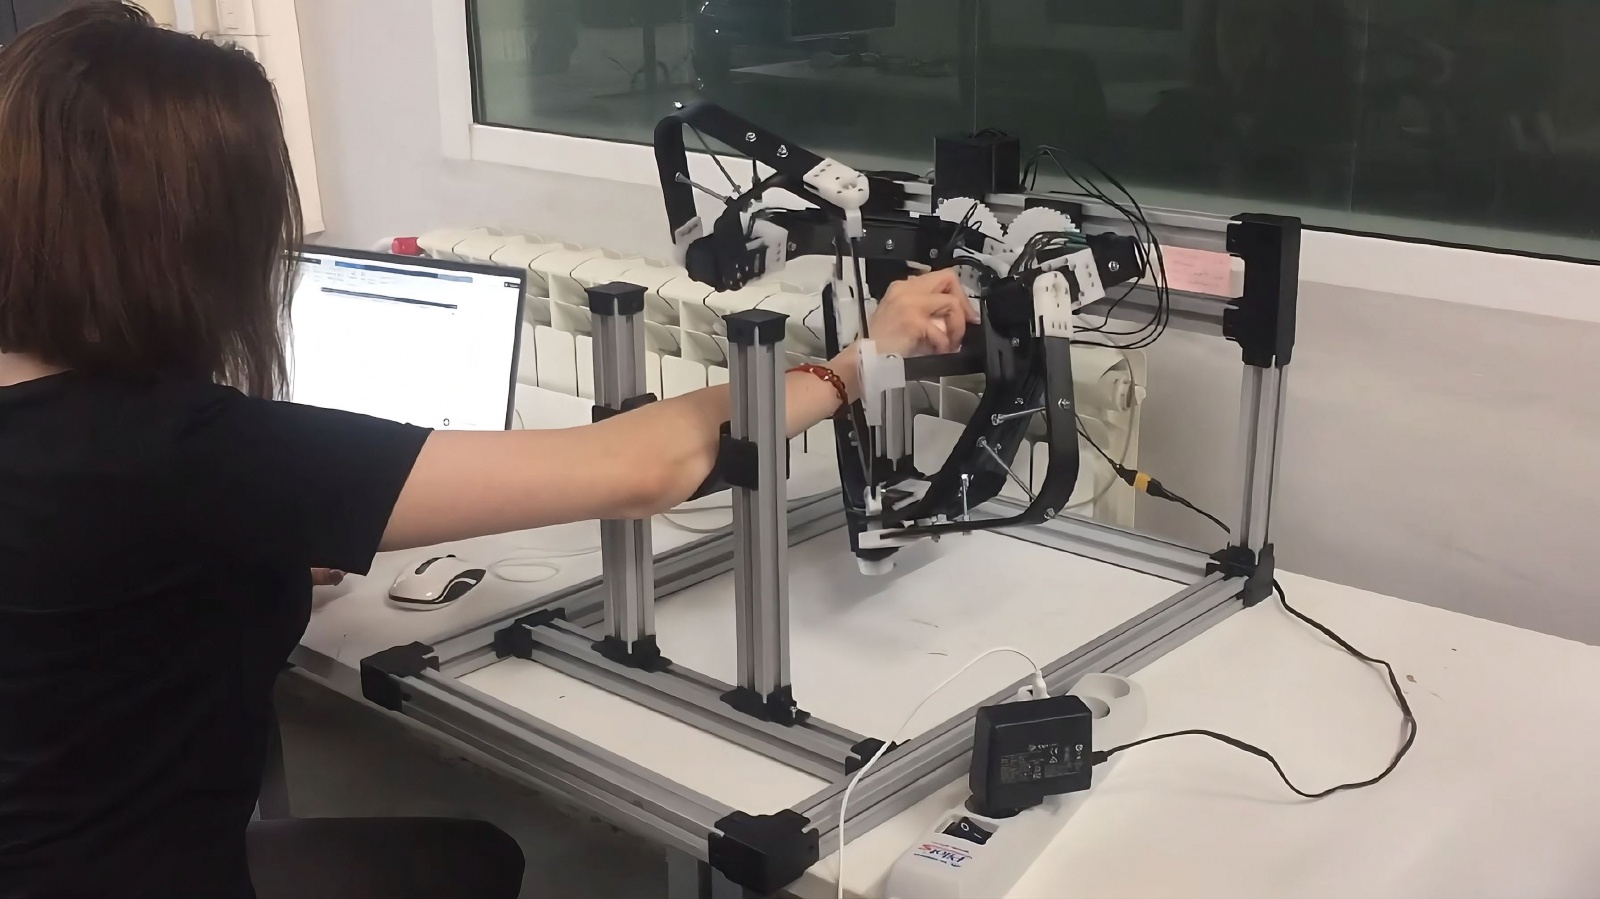 Сингулярность, желе и математика: делаем робота для реабилитации после инсульта - 1